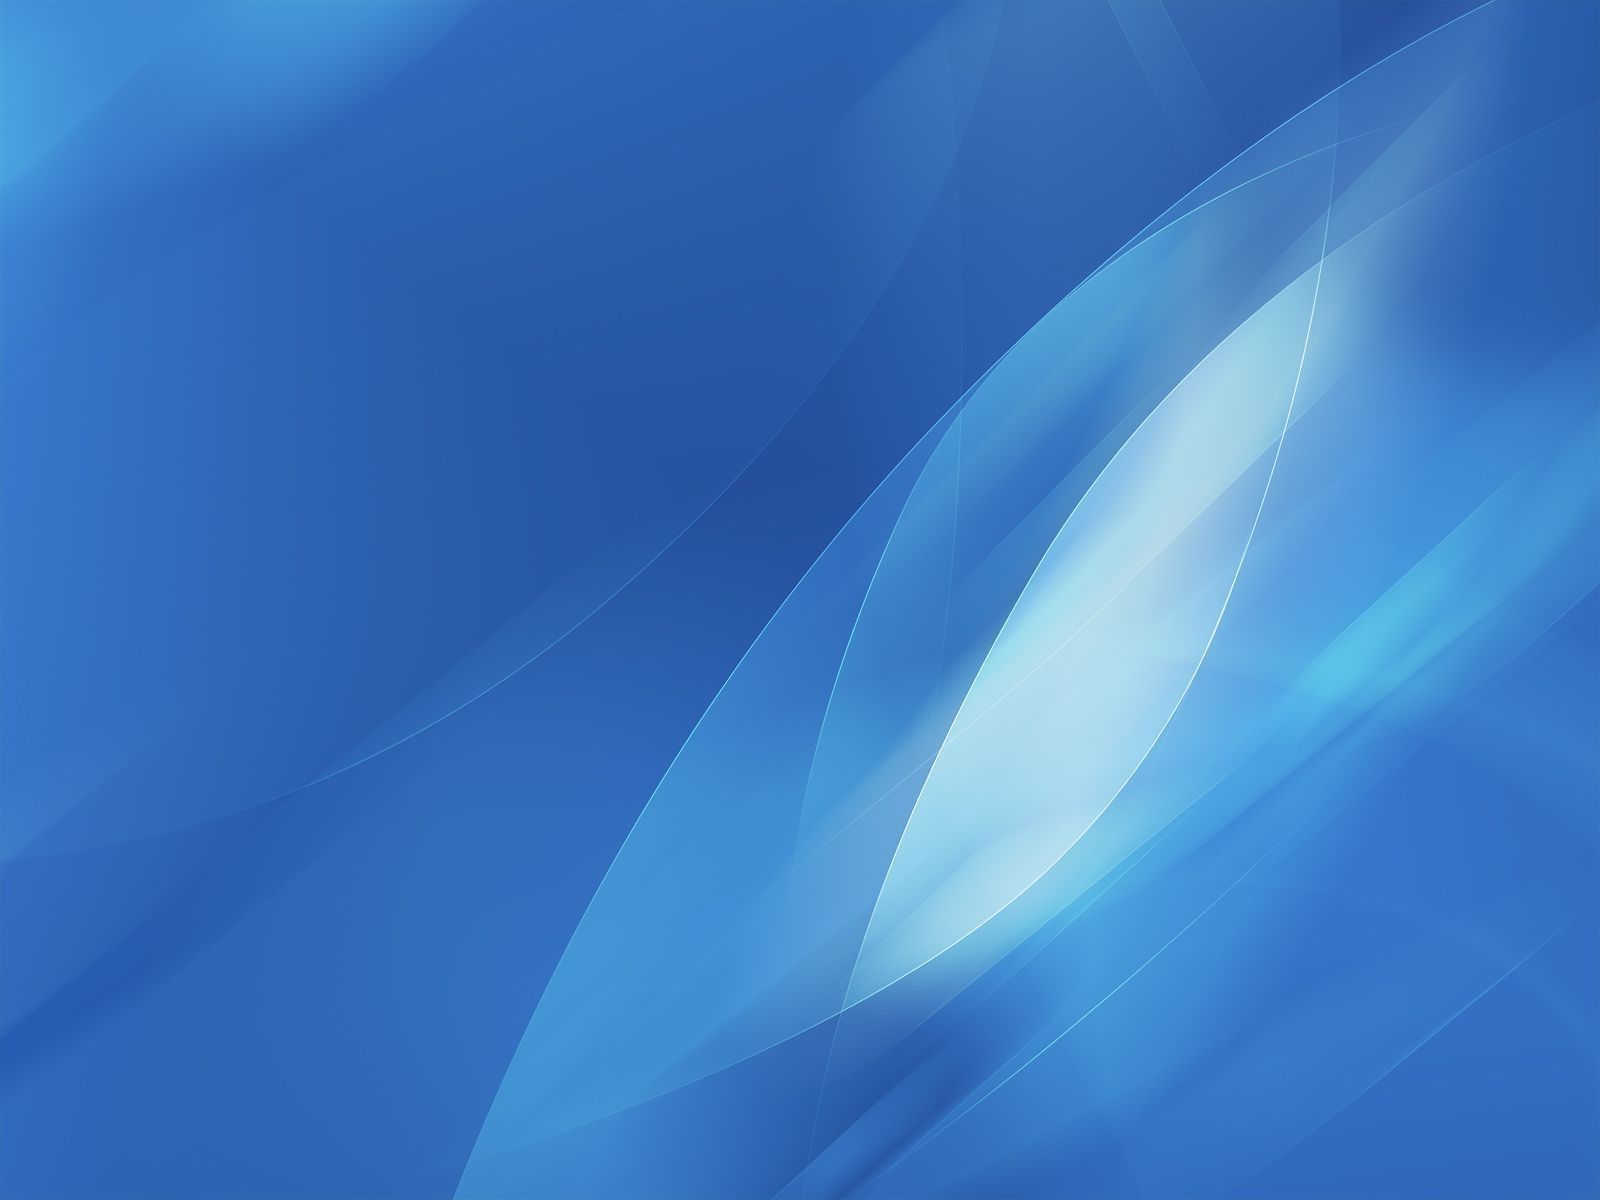 Desktop Wallpaper · Gallery · Windows 7 · Windows 7 Blue | Free ...